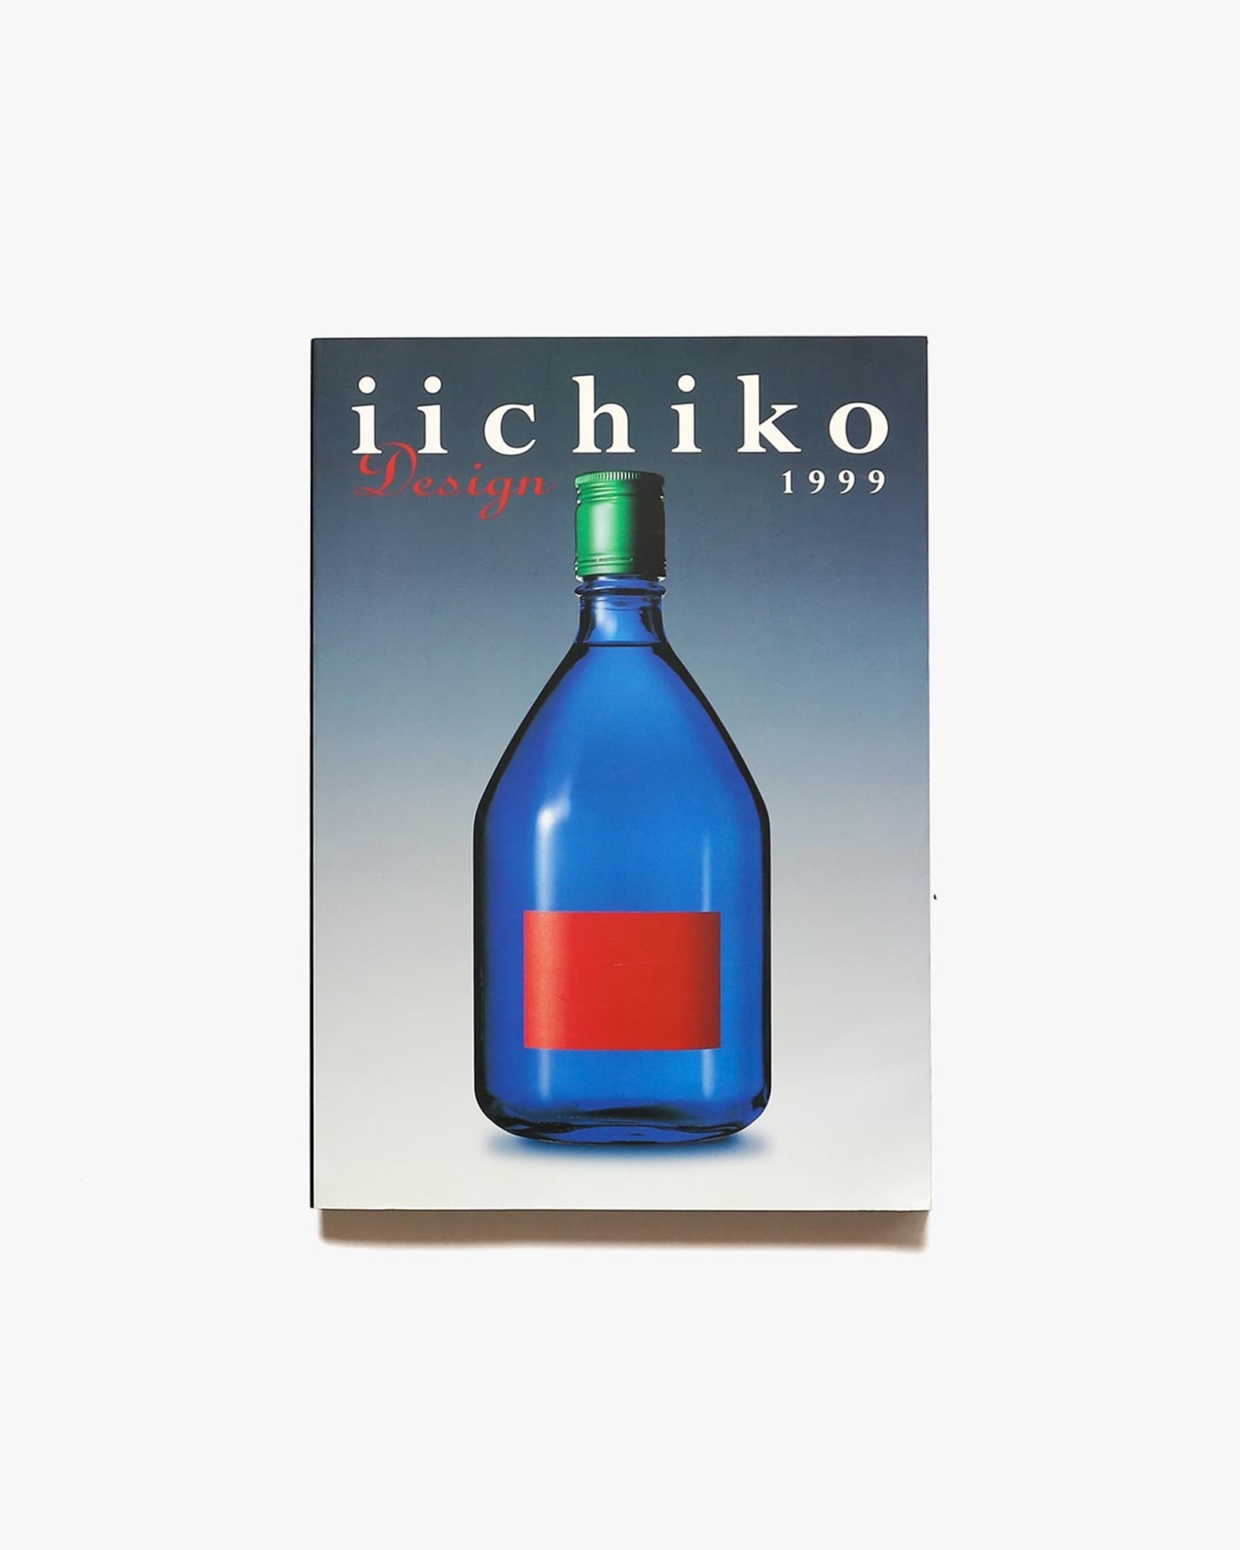 iichiko design 1999